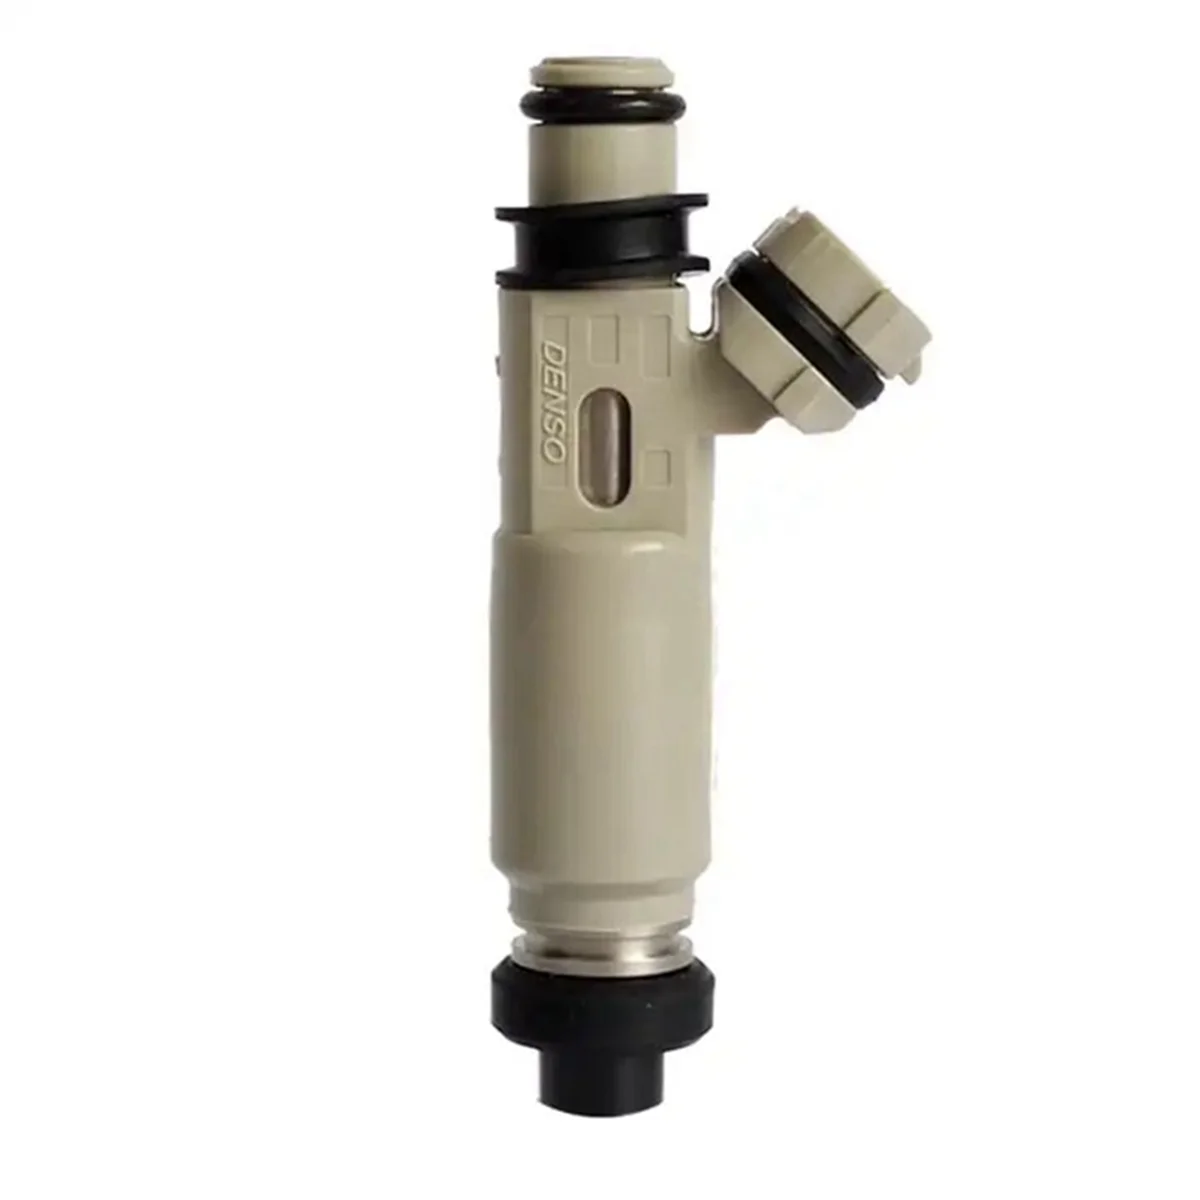 

1Pcs Fuel Injector Nozzle for Daihatsu TERIOS 16V 1.3L 1998 195500-3100 1955003100